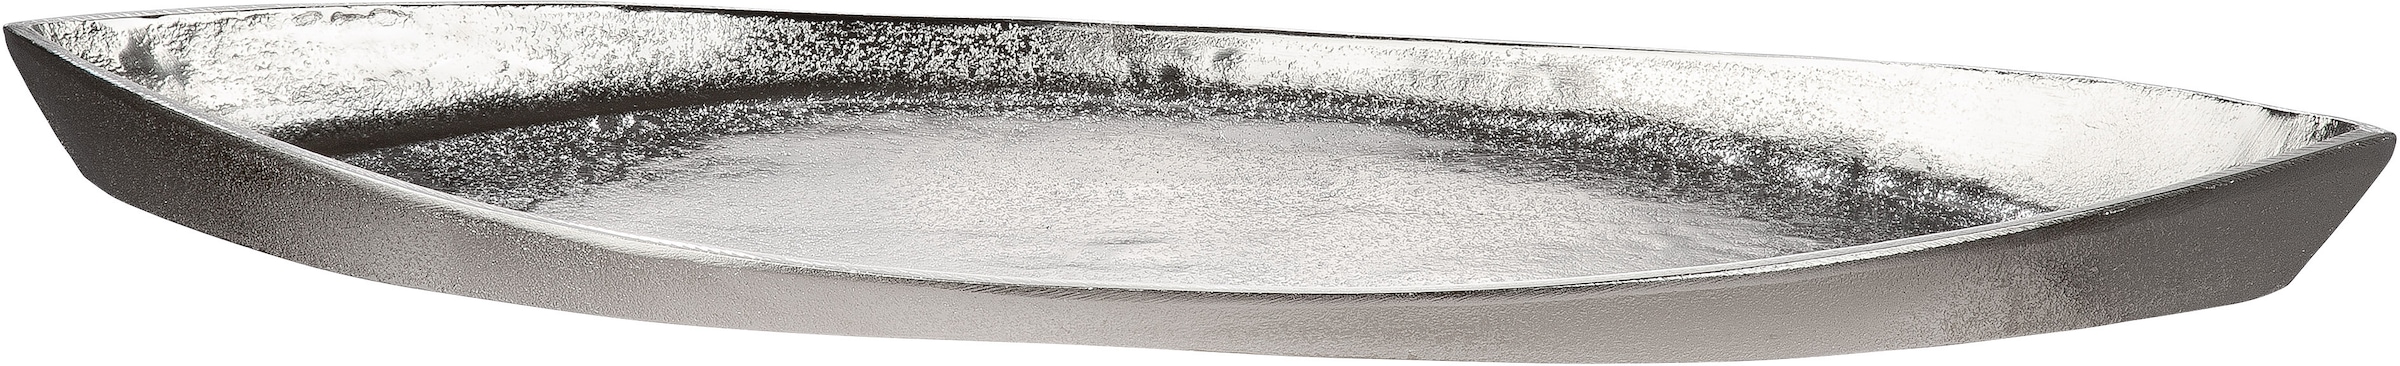 GILDE Schale »Boat«, 1 tlg., aus Alumimium, Antik-Finish, silberfarbene  Struktur, ideal zum Dekorieren bequem kaufen